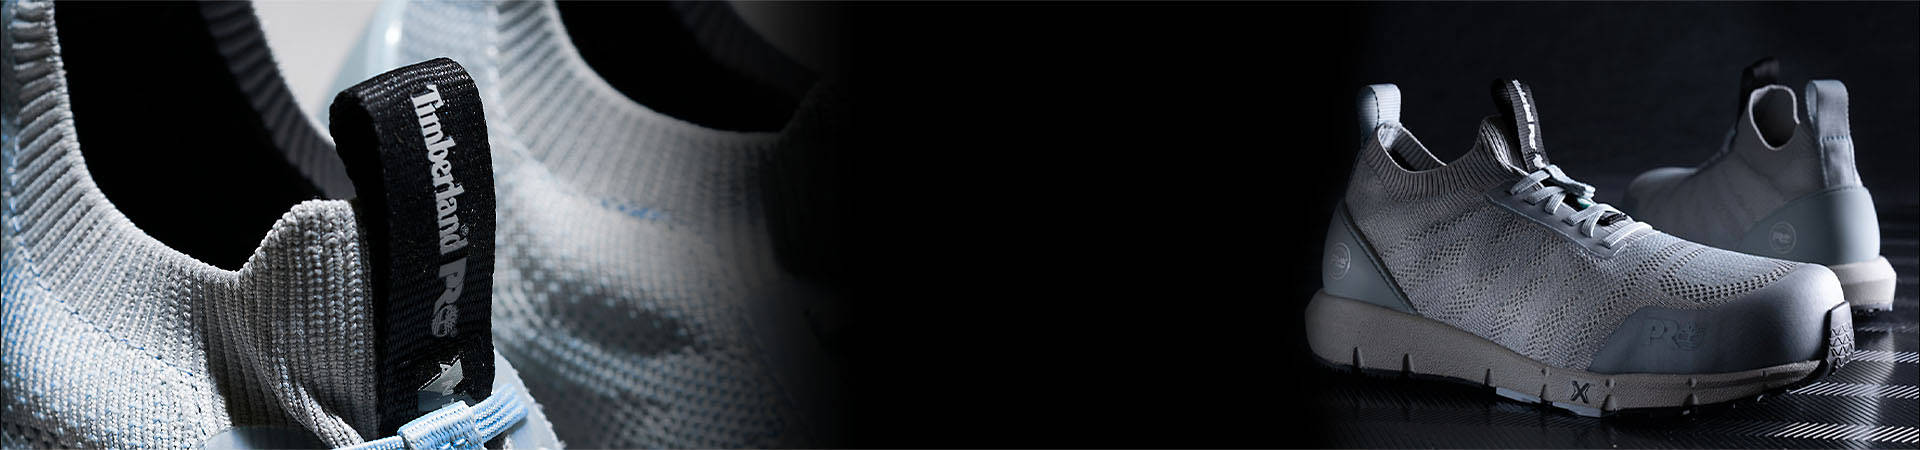 Image de deux chaussures de travail en filet gris clair, l'une avec un filet uni et l'autre avec un motif en zigzag, sur une surface noire et un fond noir.